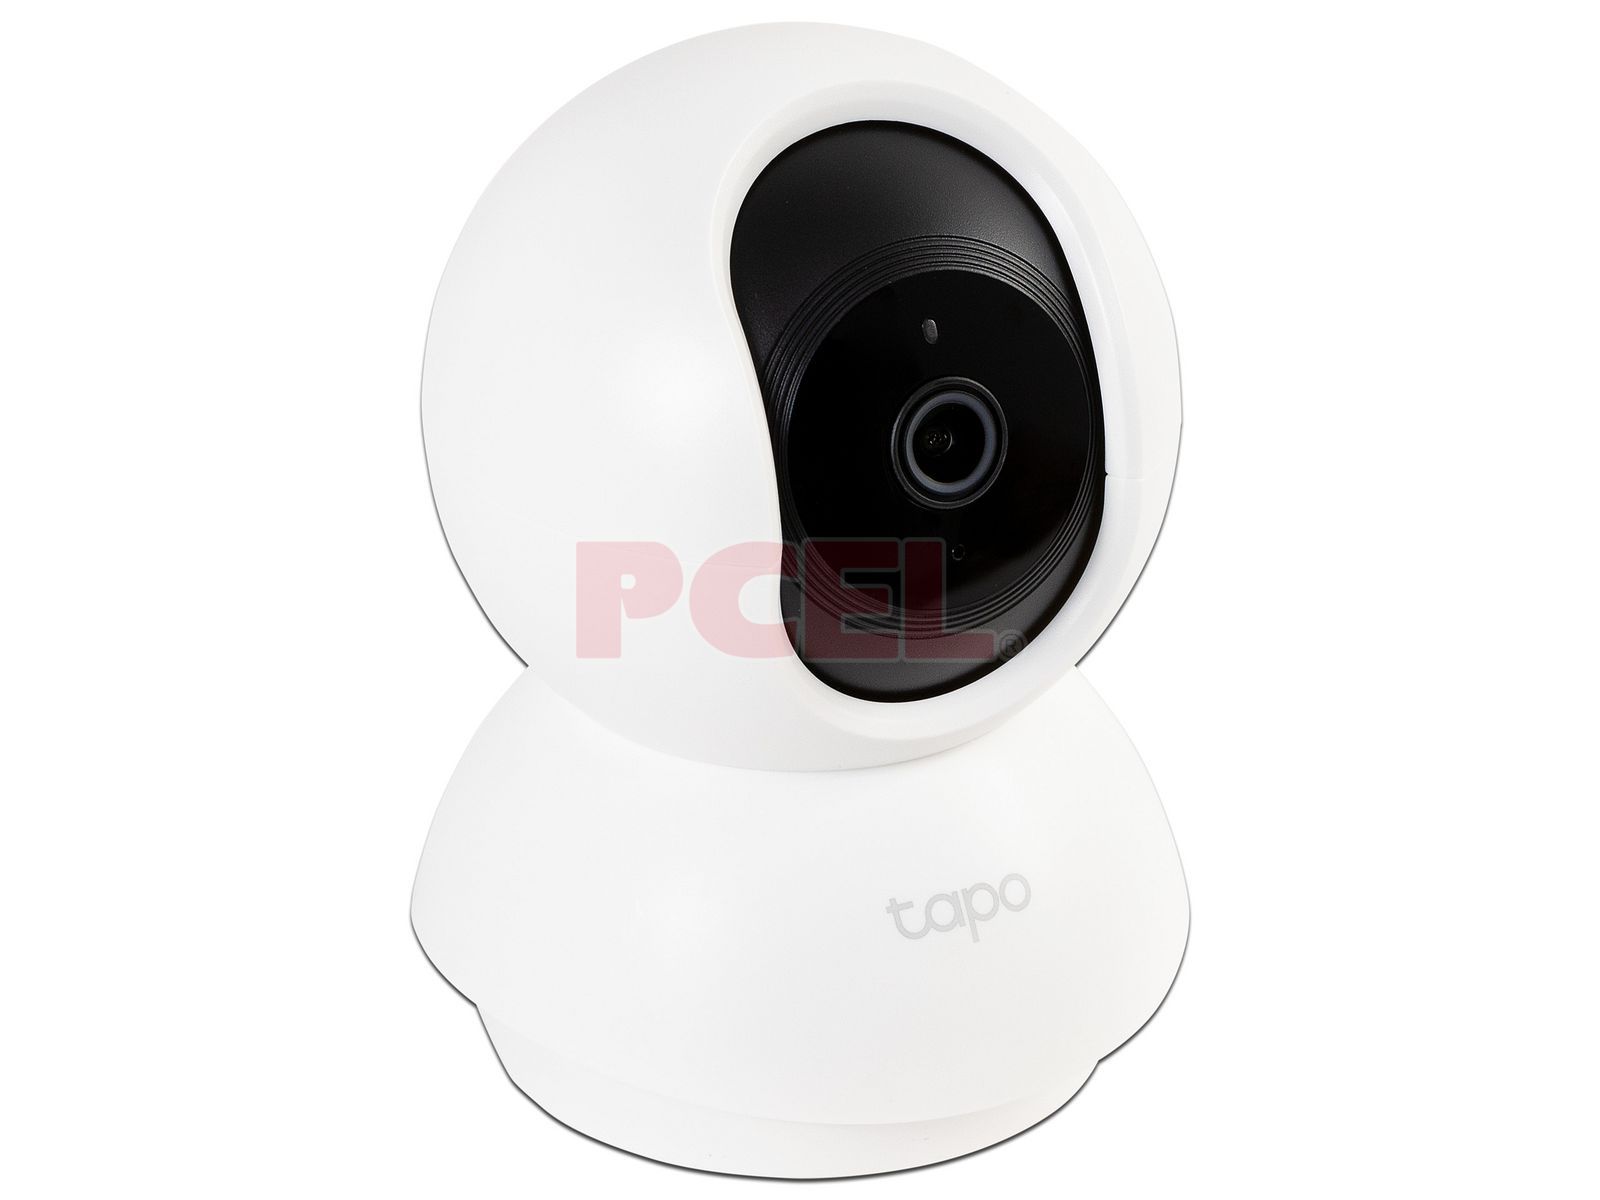 Cámara de Vigilancia TP-Link Tapo C200, Resolución Full HD 1080P, Visión  nocturna hasta 30m , Pan/Tilt, Soporta microSD hasta 128GB, Wi-Fi, Audio  bidireccional.